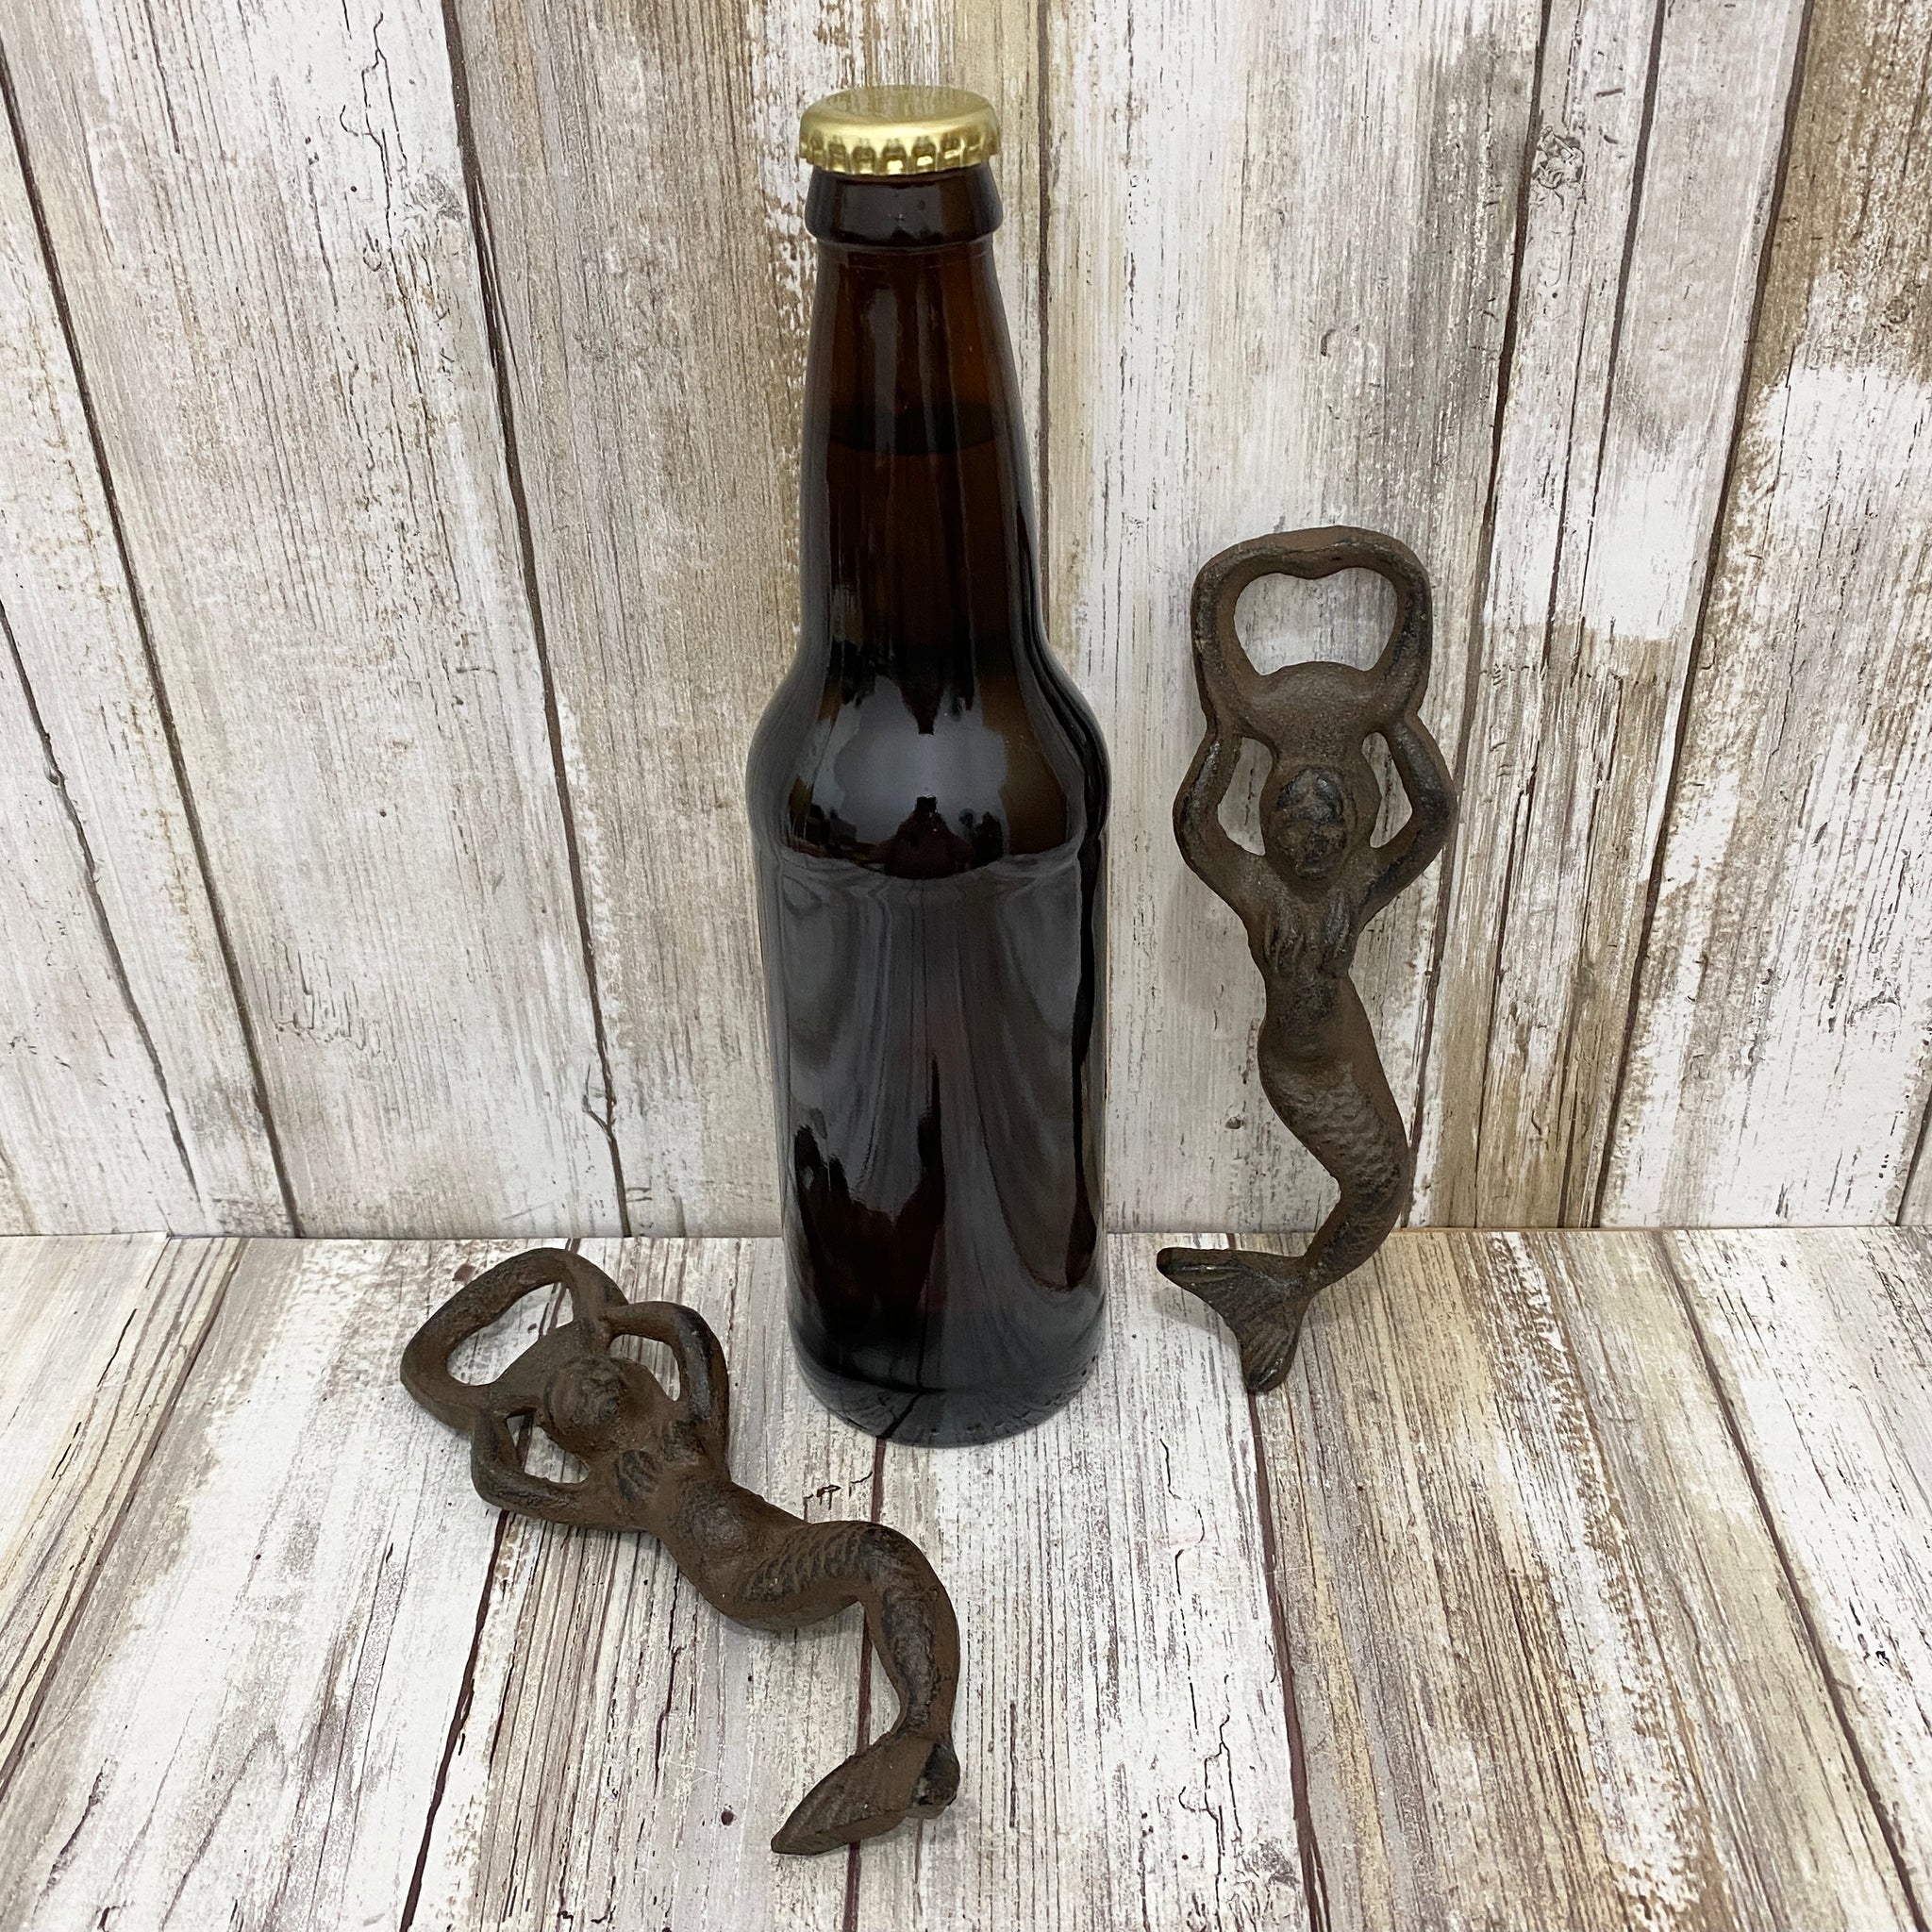 Mermaid Cast Iron Beer Bottle Opener